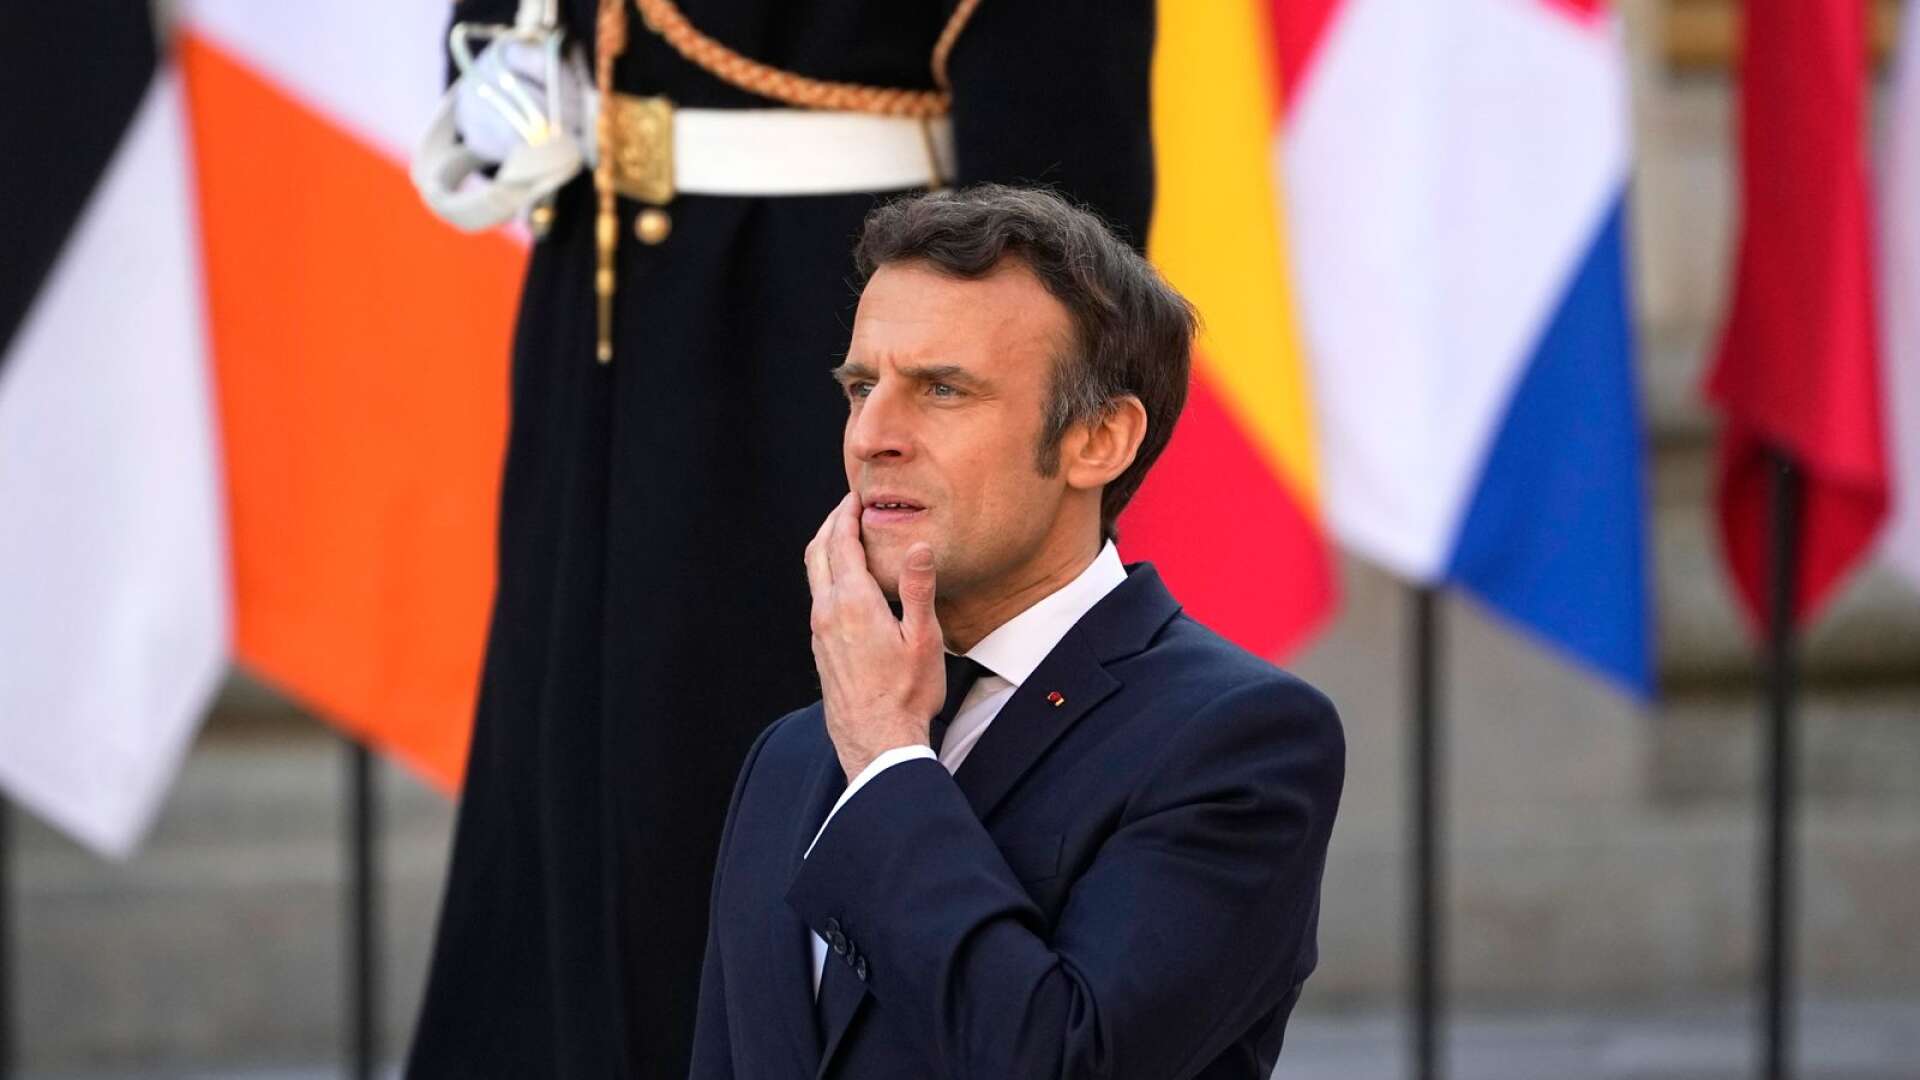 Mitt i alla detta har den franske presidenten Emmanuel Macron uppmanat till en nystart för EU. I praktiken betyder detta, som i varje kris, att EU skall bli än mer överstatligt och få mer makt och större budget, skriver Charlie Weimers.